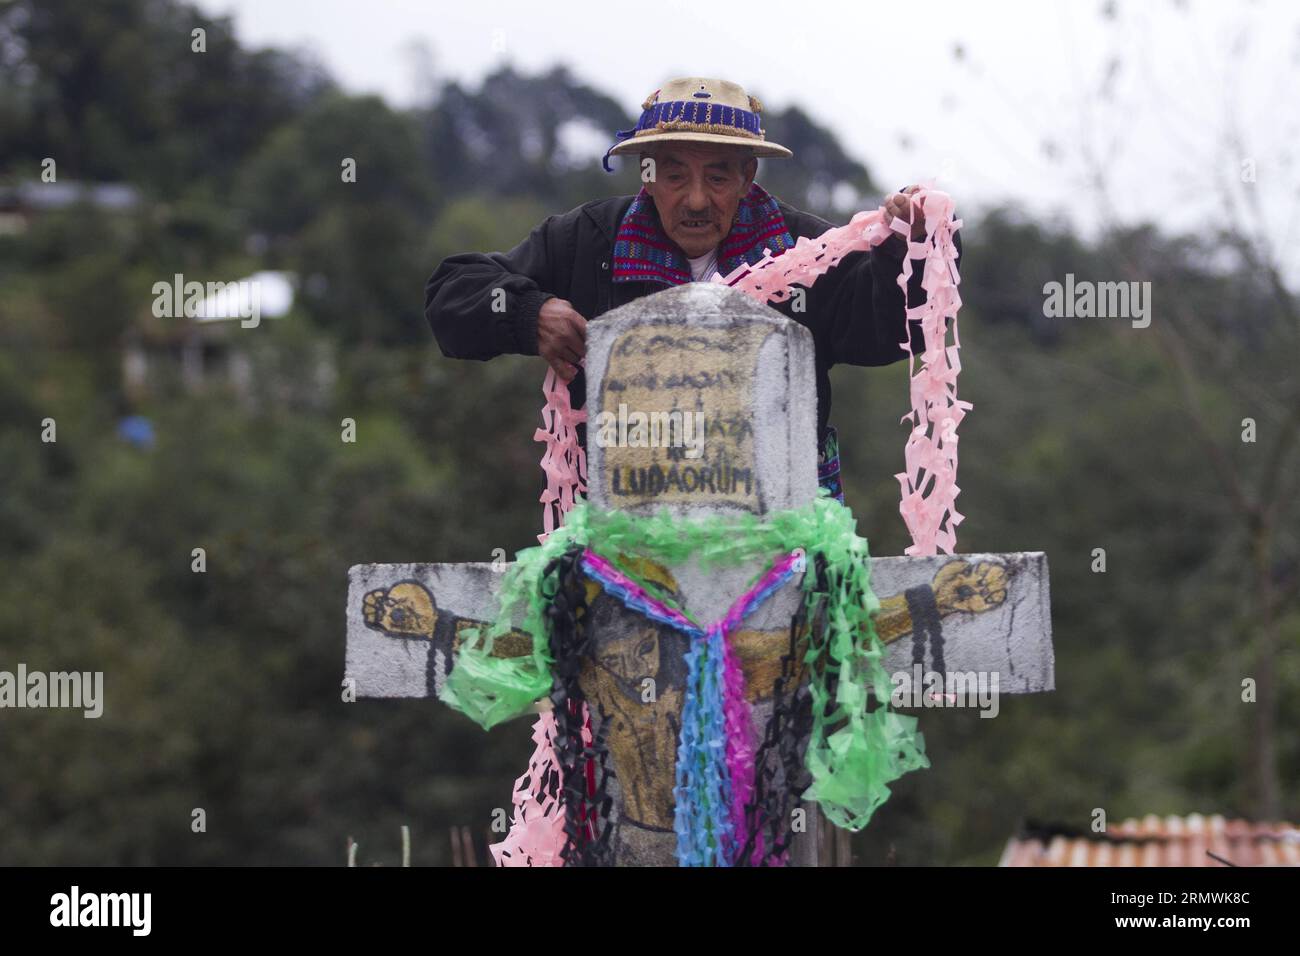 (141102) -- HUEHUETENANGO, Nov 2, 2014 -- A man decorates a grave during the commemoration of All Saints Day, in Todos Santos Cuchumatan municipality, Huehuetenango department, Guatemala, on Nov. 1, 2014. Luis Echeverria) (jp) GUATEMALA-HUEHUETENANGO-SOCIETY-DAY OF THE DEAD e LuisxEcheverria PUBLICATIONxNOTxINxCHN   Nov 2 2014 a Man  a Grave during The Commemoration of All Saints Day in Todos Santos Cuchumatan Municipality  Department Guatemala ON Nov 1 2014 Luis Echeverria JP Guatemala  Society Day of The Dead e  PUBLICATIONxNOTxINxCHN Stock Photo